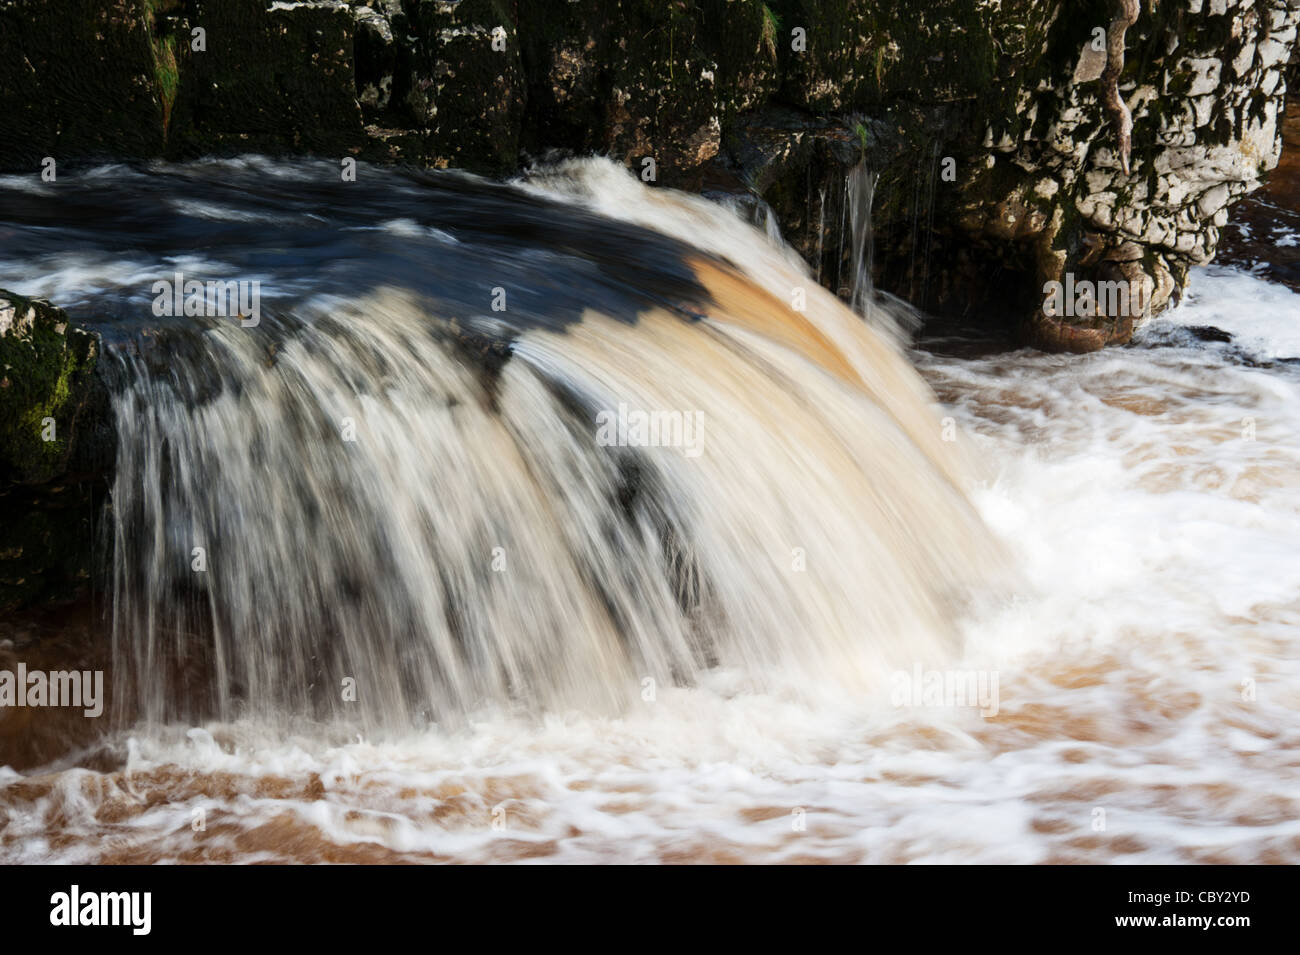 Linton falls. cae agua rocas Grassinton rápido fluir el agua del río wharfe cantos rodados. Foto de stock